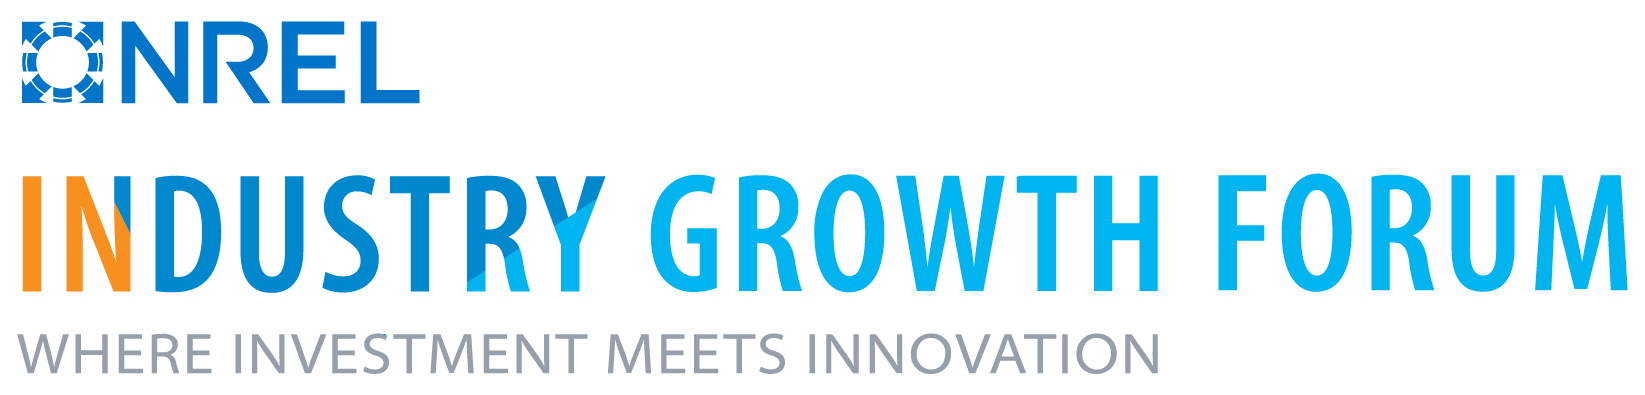 NREL Industry Growth Forum logo